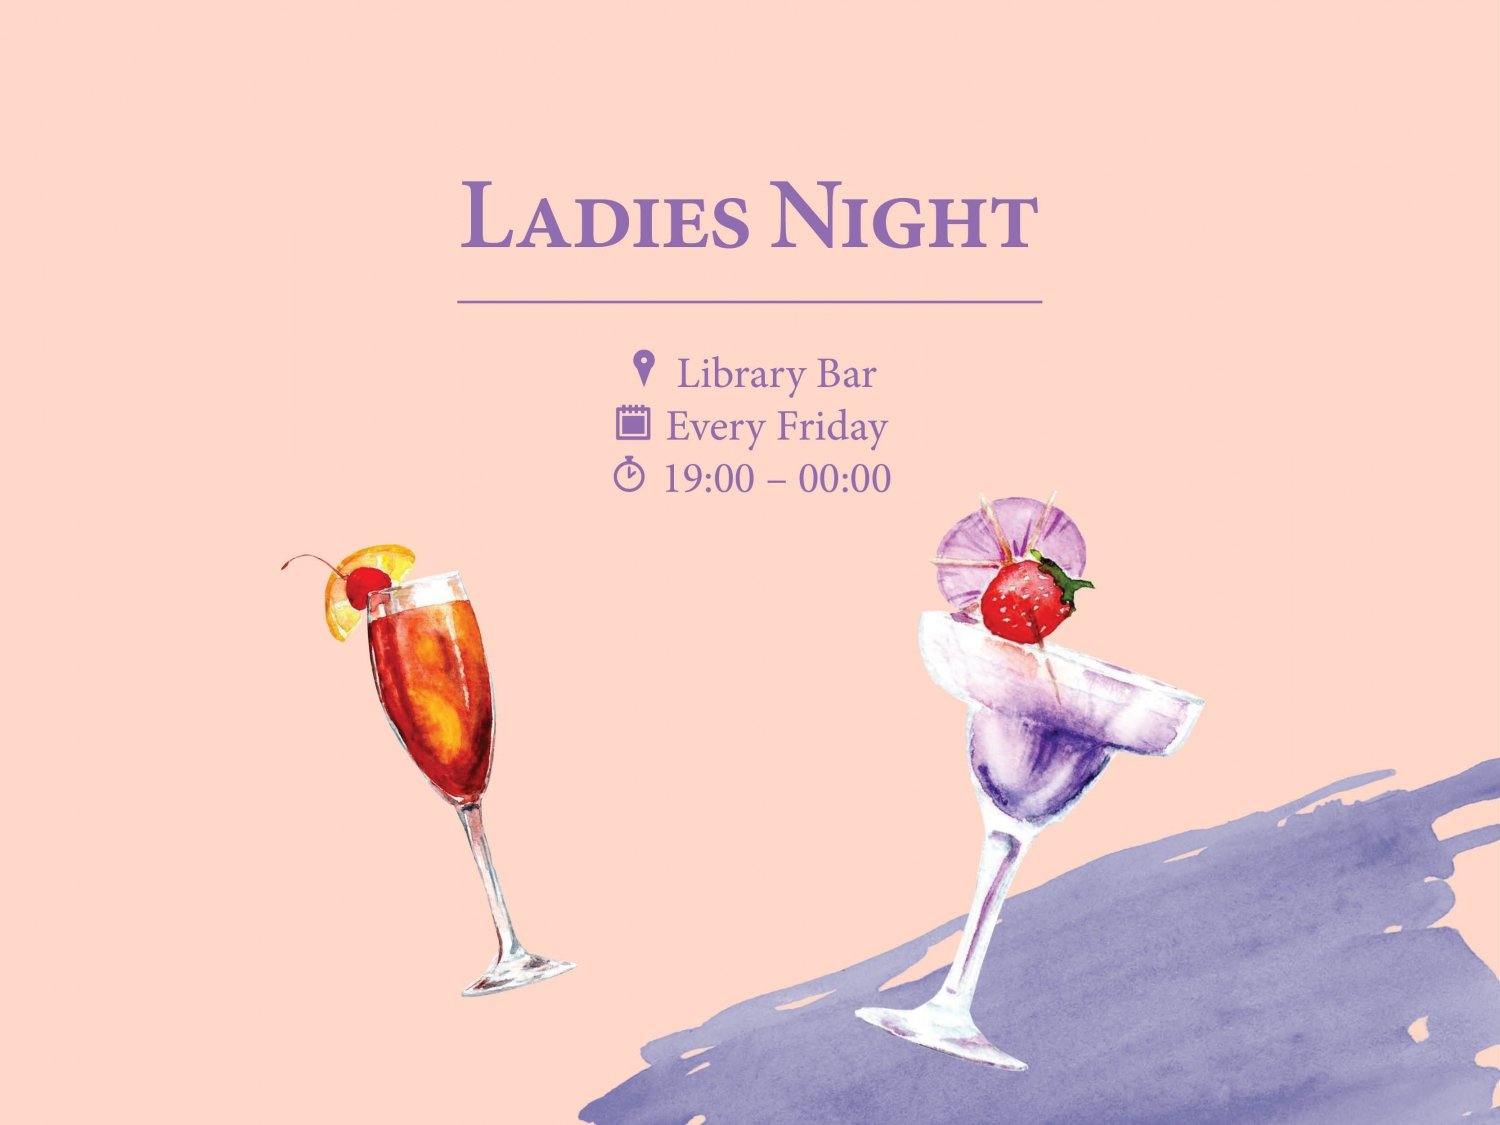 Ladies Night at Library Bar